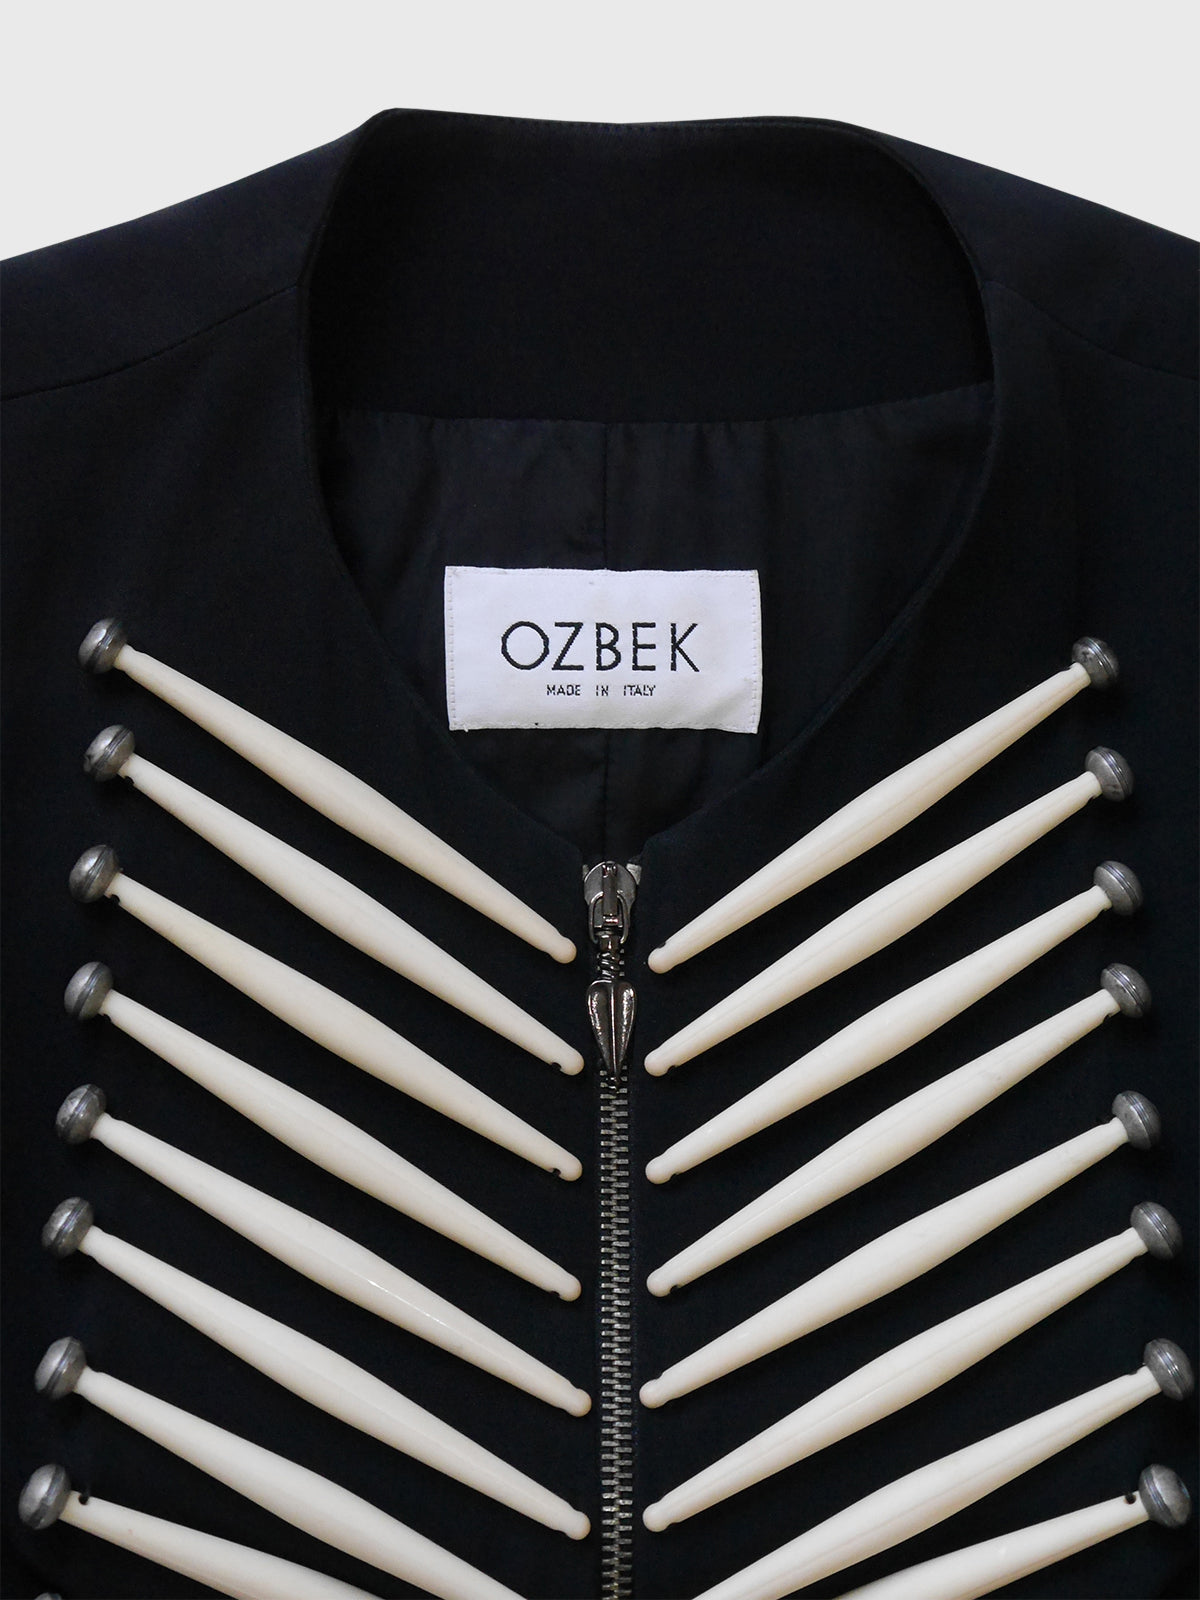 RIFAT OZBEK Spring 1992 Vintage Documented Boned Jacket